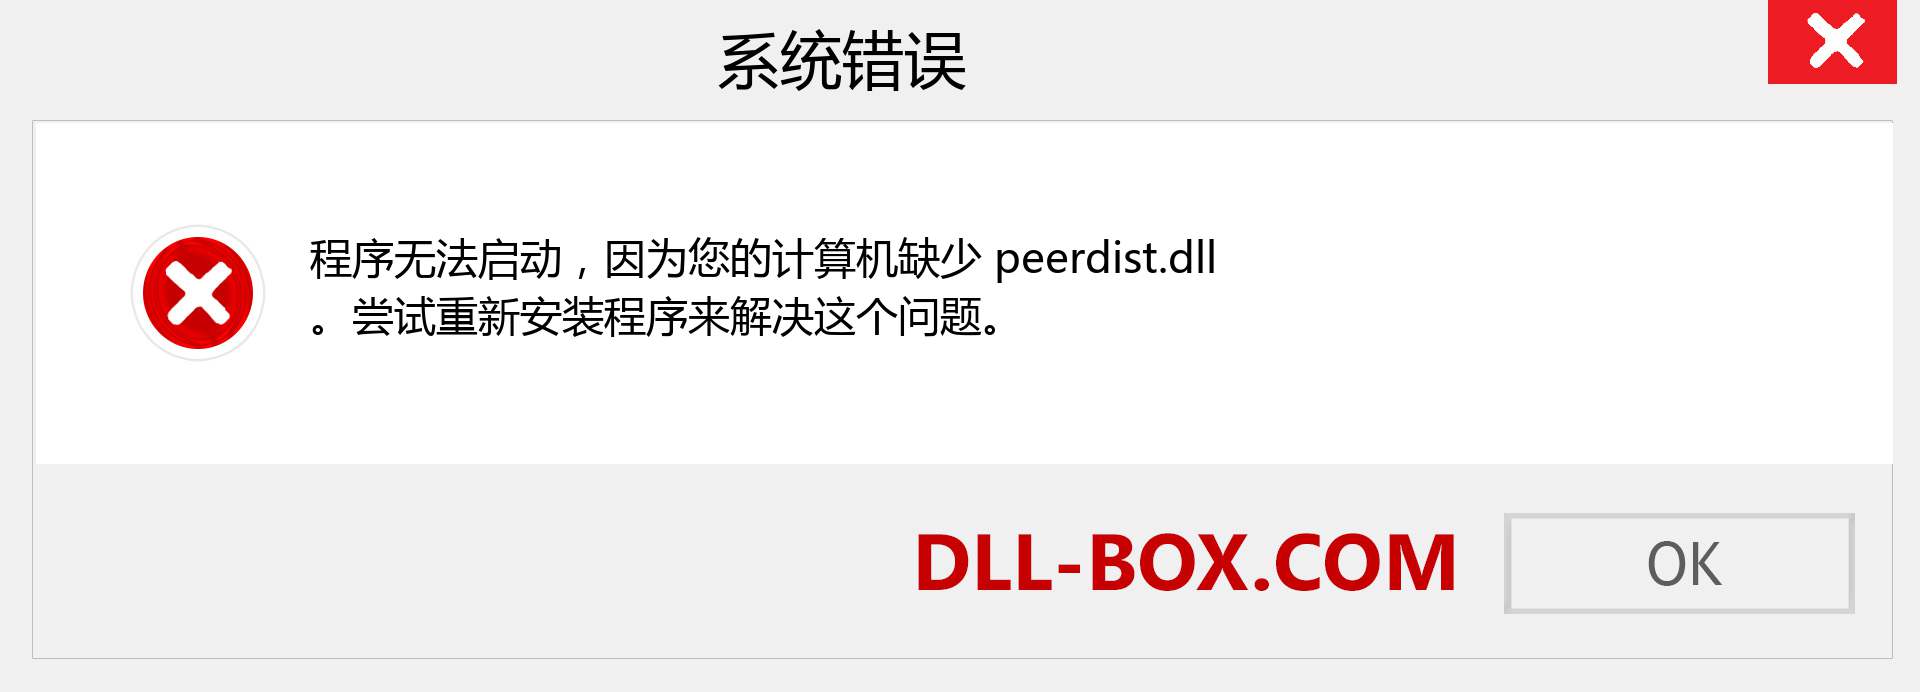 peerdist.dll 文件丢失？。 适用于 Windows 7、8、10 的下载 - 修复 Windows、照片、图像上的 peerdist dll 丢失错误